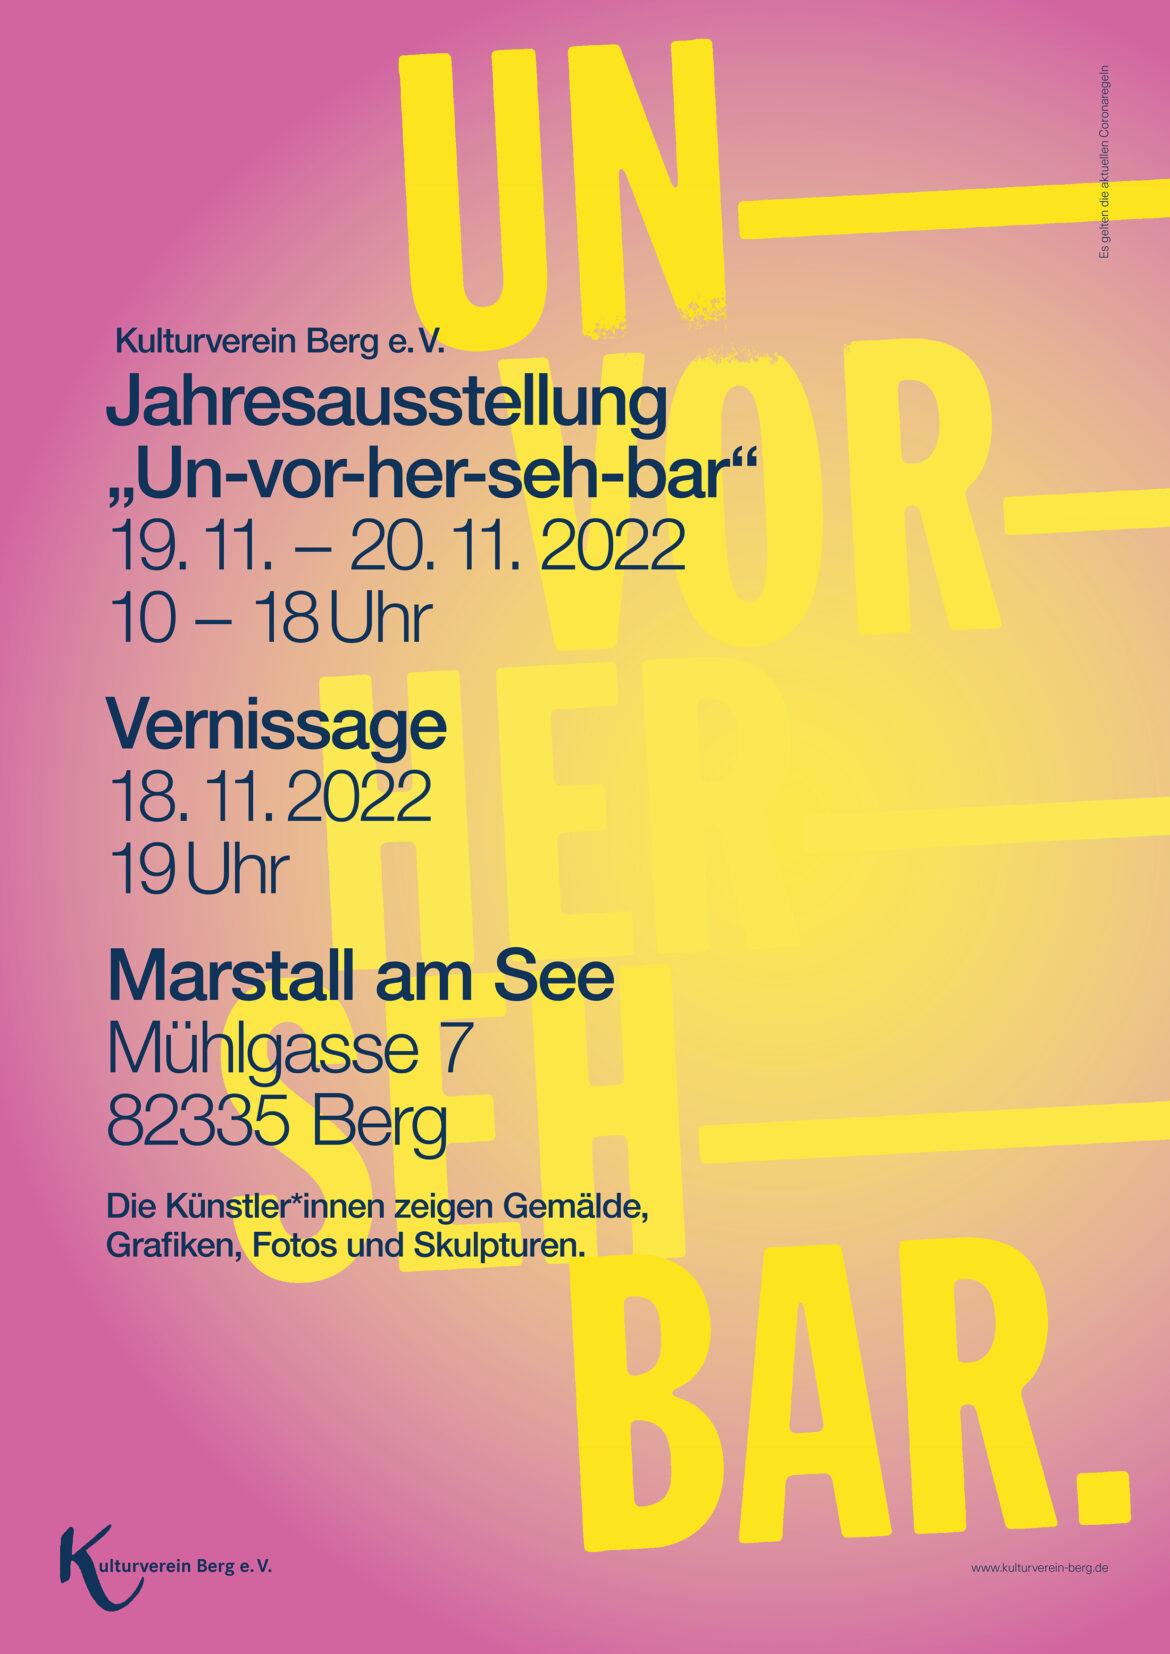 ﻿Jahresausstellung 2022: "Un-vor-her-seh-bar"